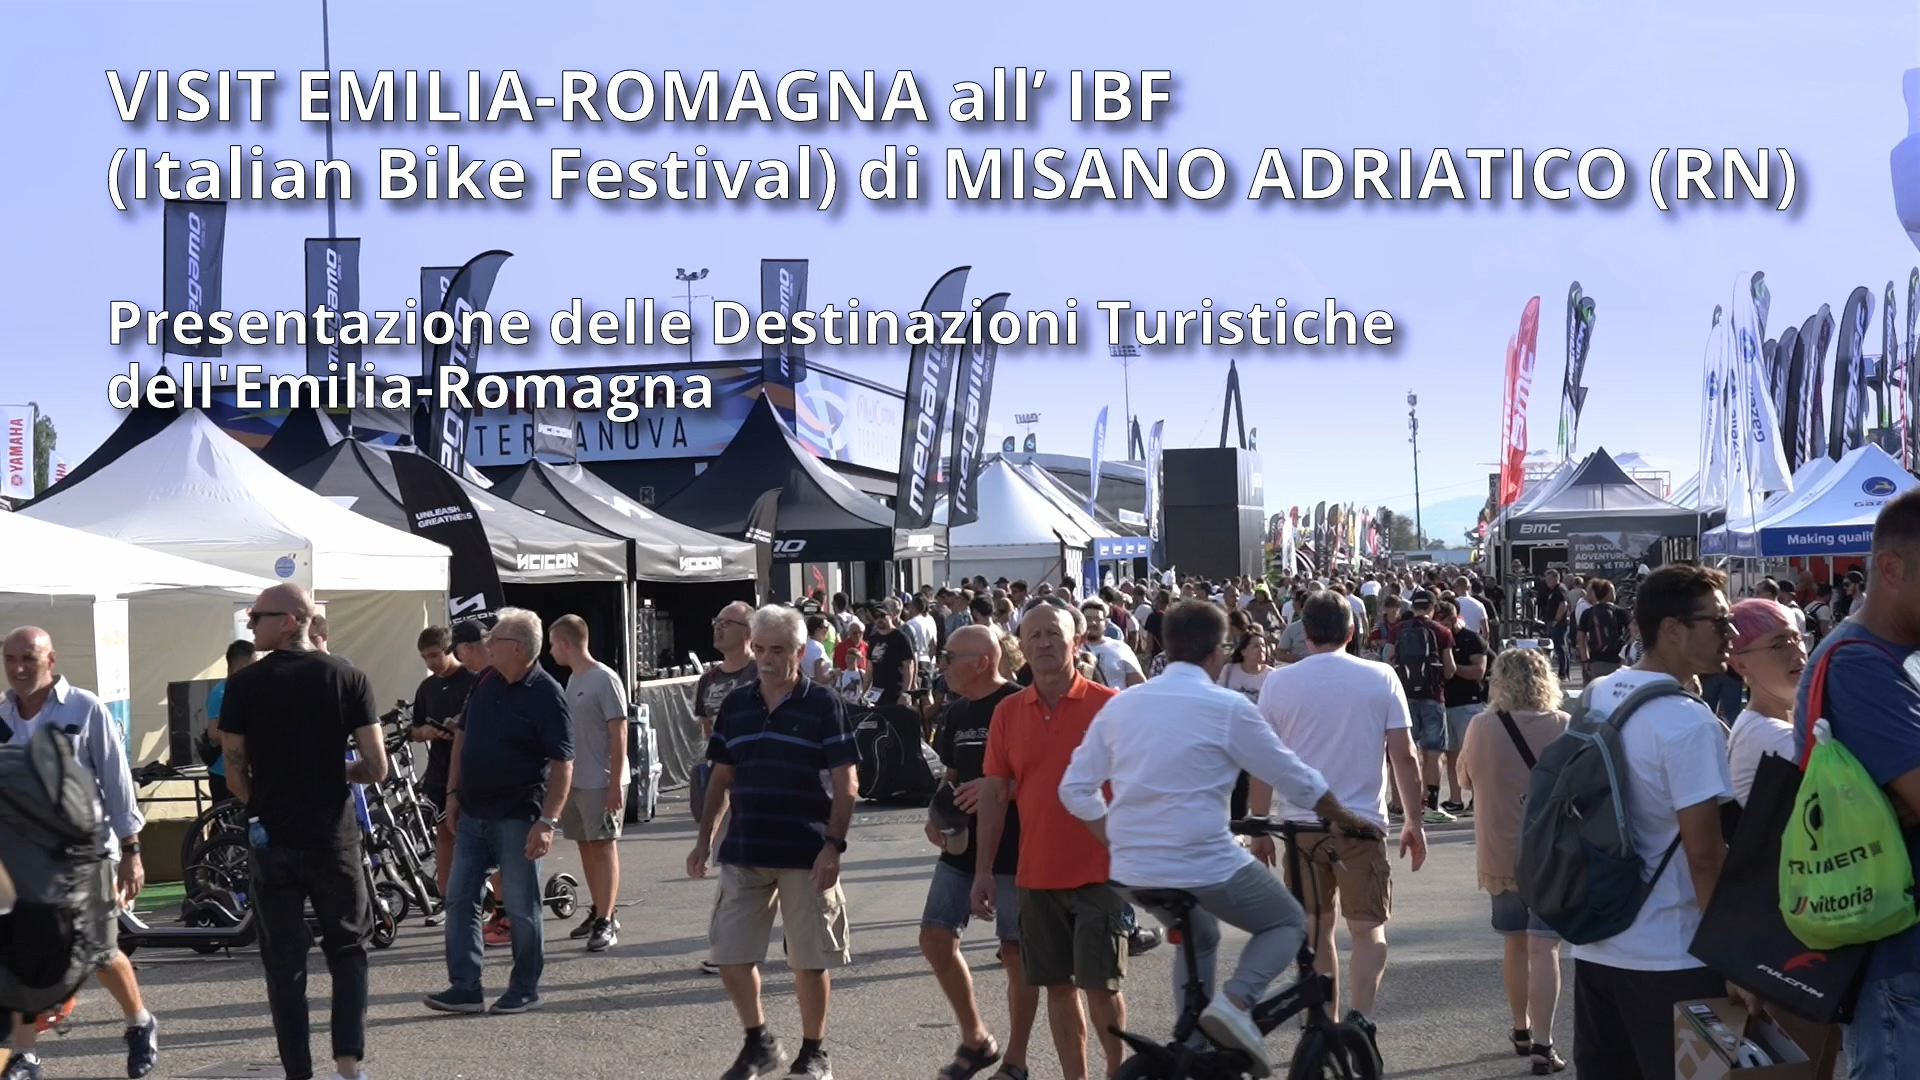 Visit Emilia-Romagna all’IBF (Italian Bike Festival) di Misano Adriatico (RN)